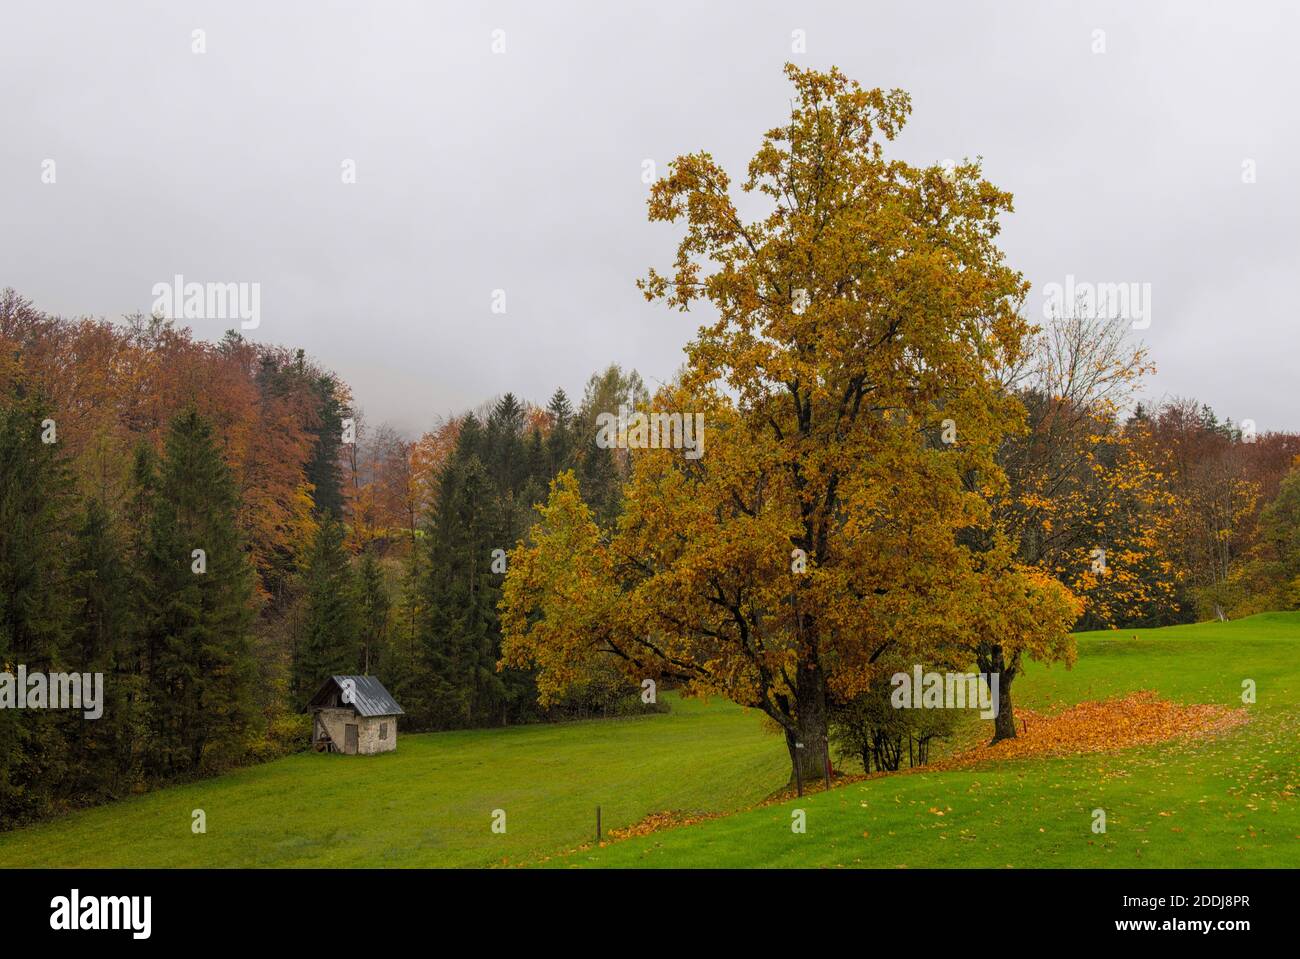 Herbstlicher Baum auf einer Wiese mit Hütte neben dem Wald Banque D'Images